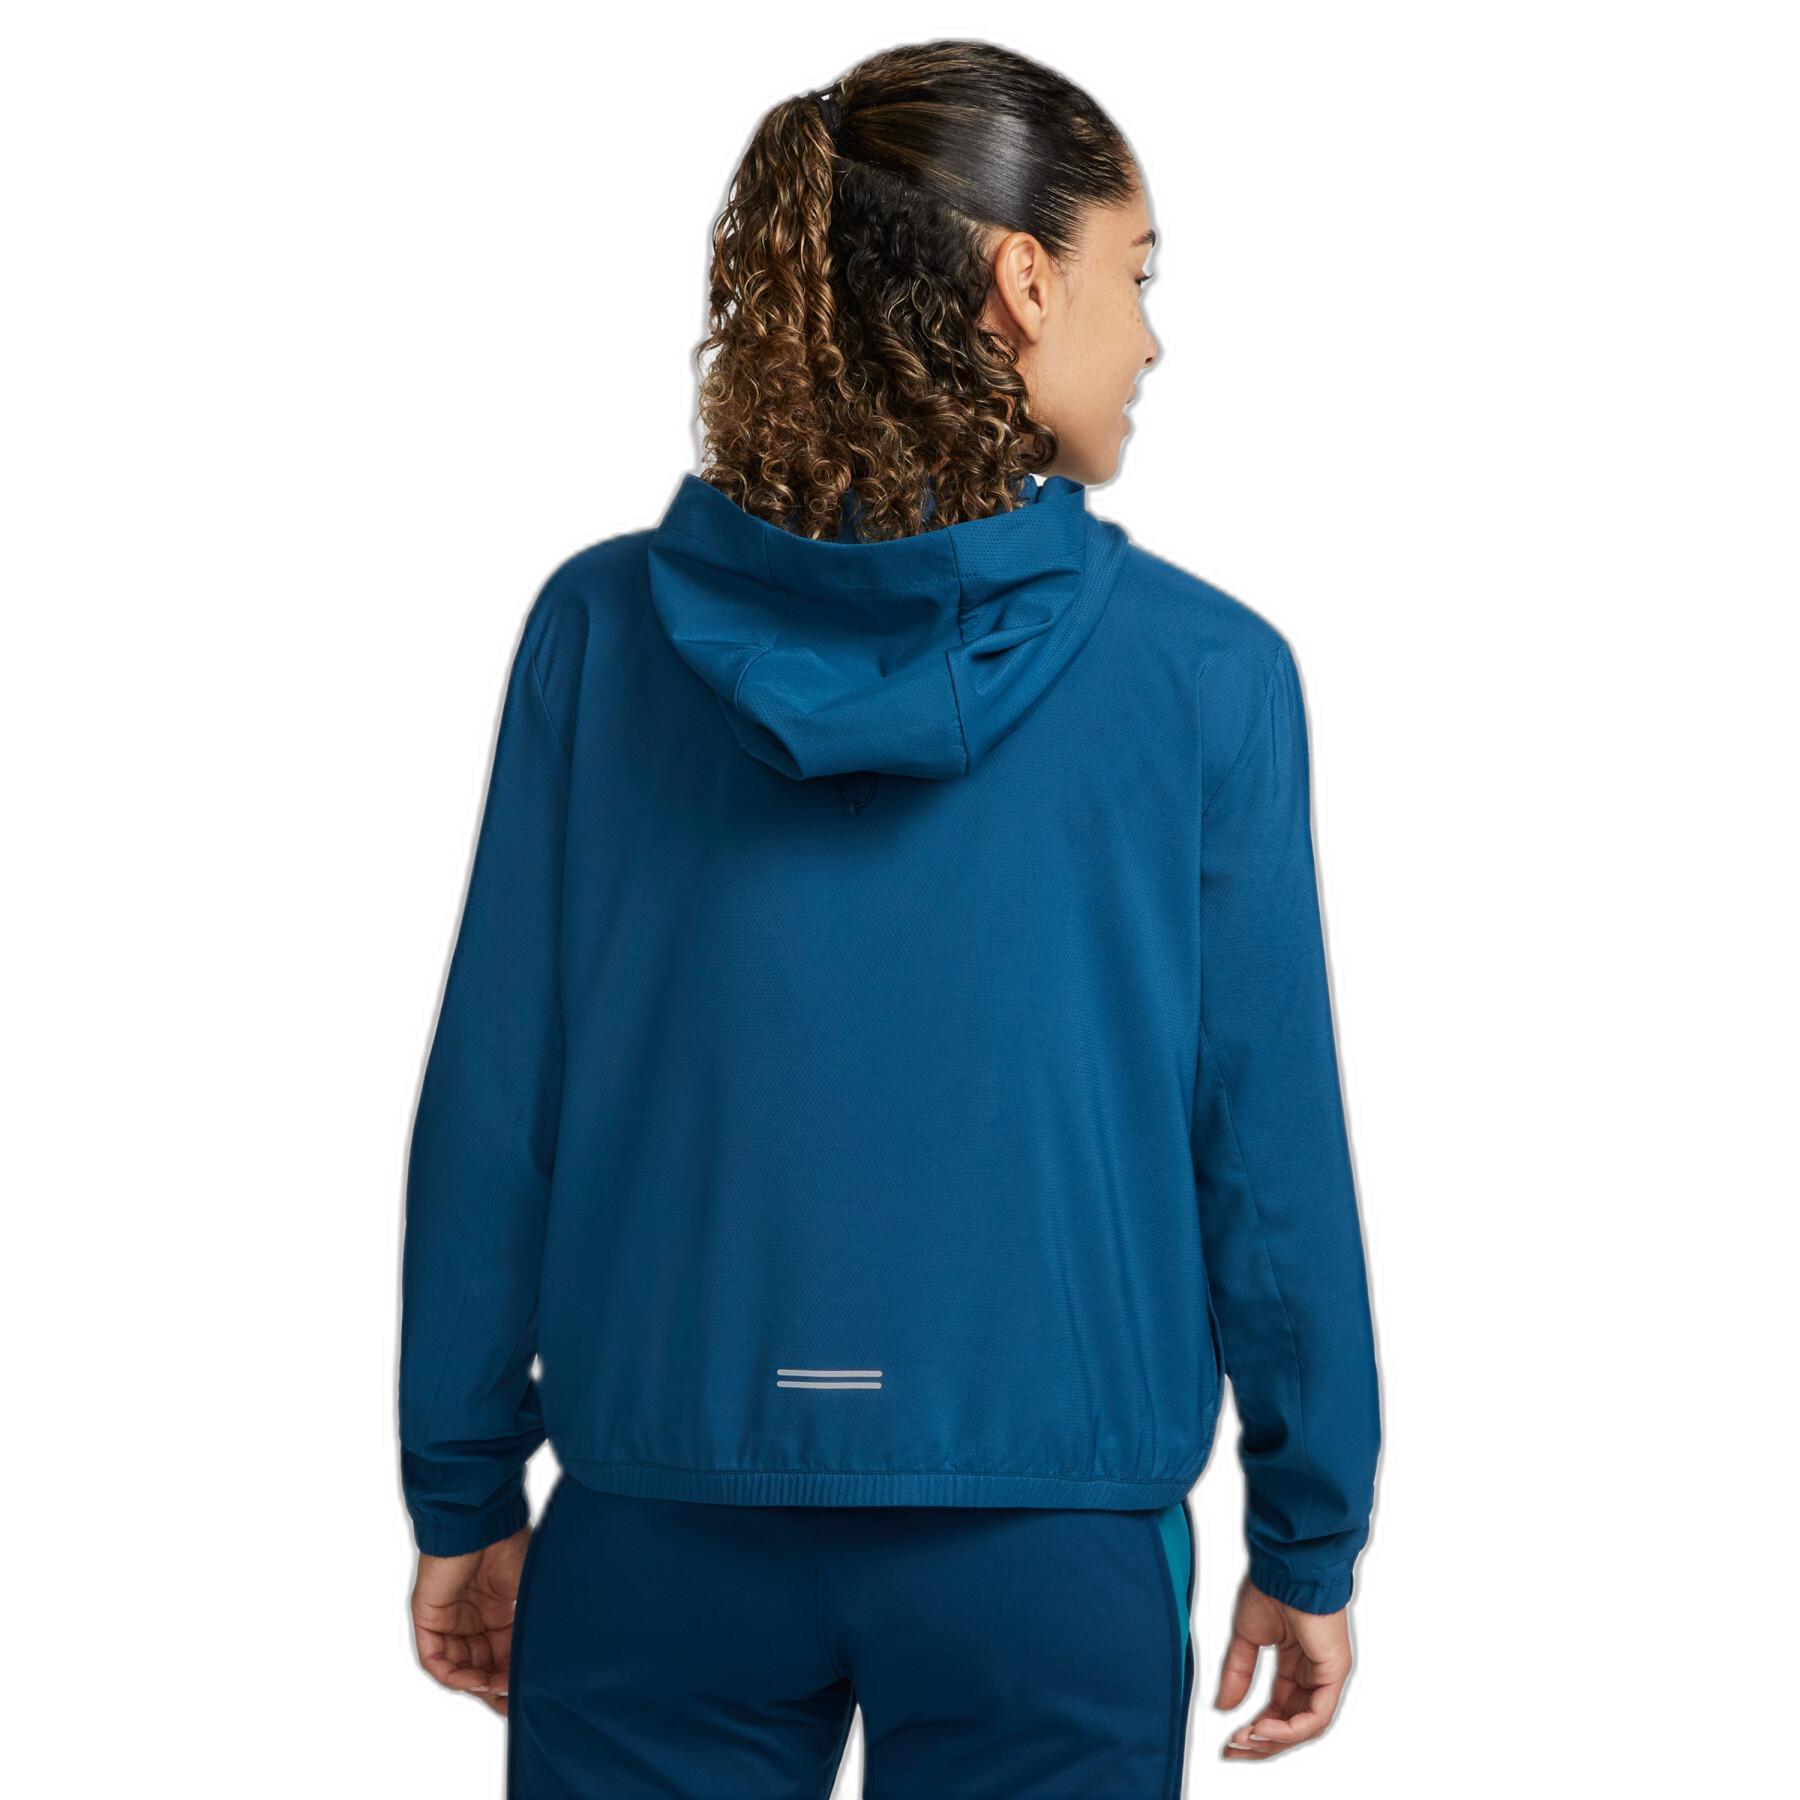 Women's waterproof jacket Nike Impossibly Light